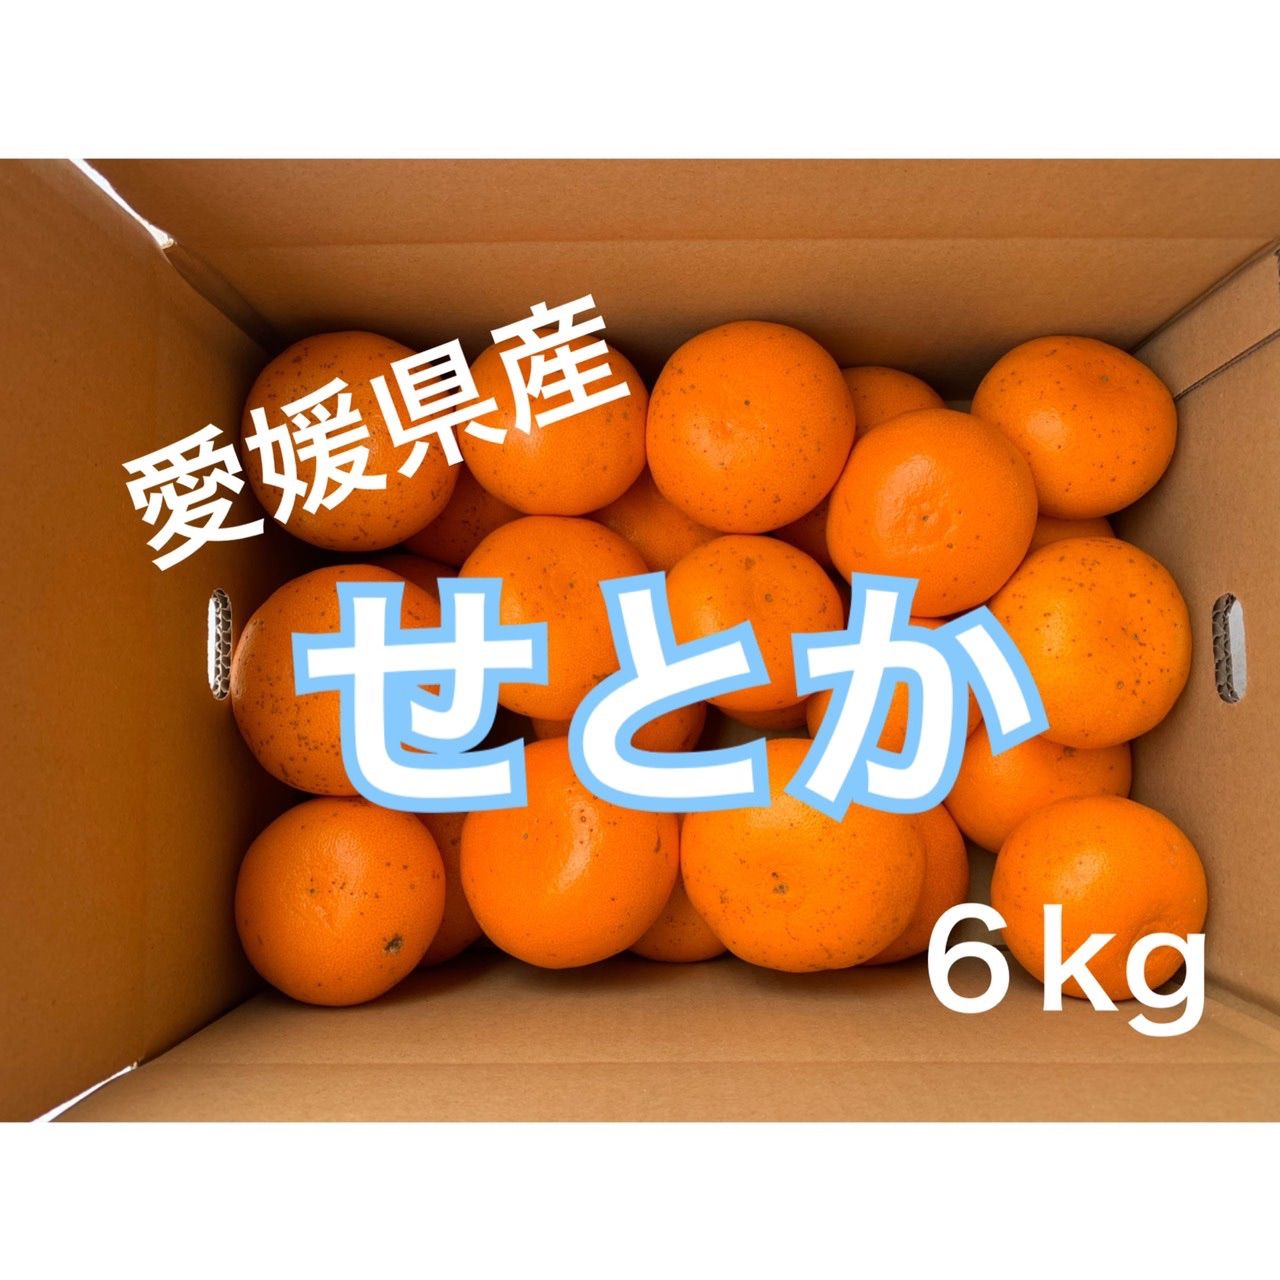 商品追加値下げ在庫復活 愛媛県産せとか6kg×2 eu-agencies.net